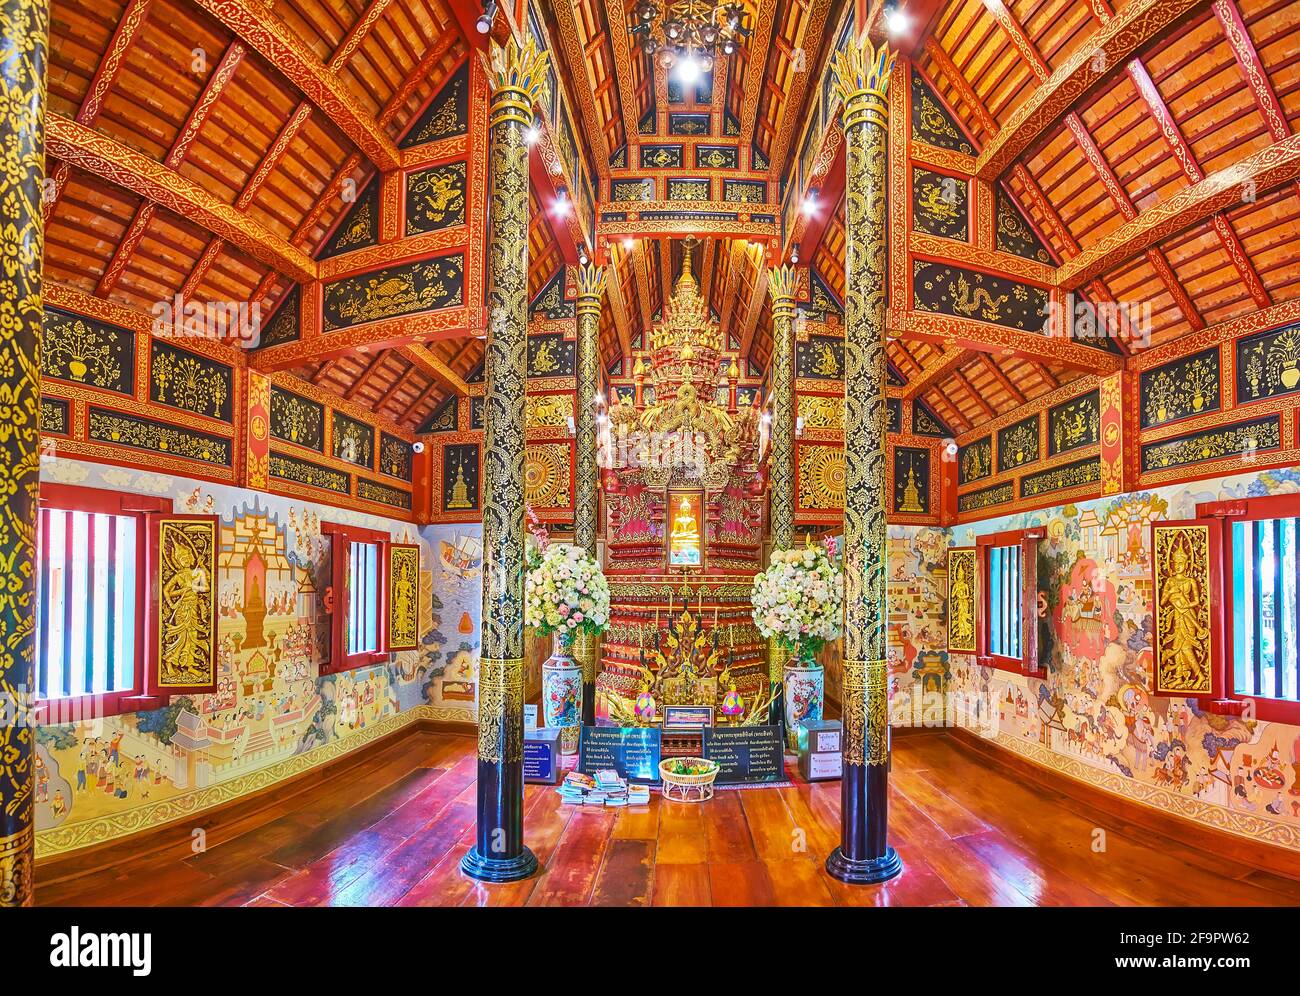 CHIANG RAI, THAILANDIA - 11 MAGGIO 2019: Gli interni riccamente decorati della Sala Viharn del Tempio di Wat Phra Singh con raffinati motivi dorati, dipinti su W. Foto Stock